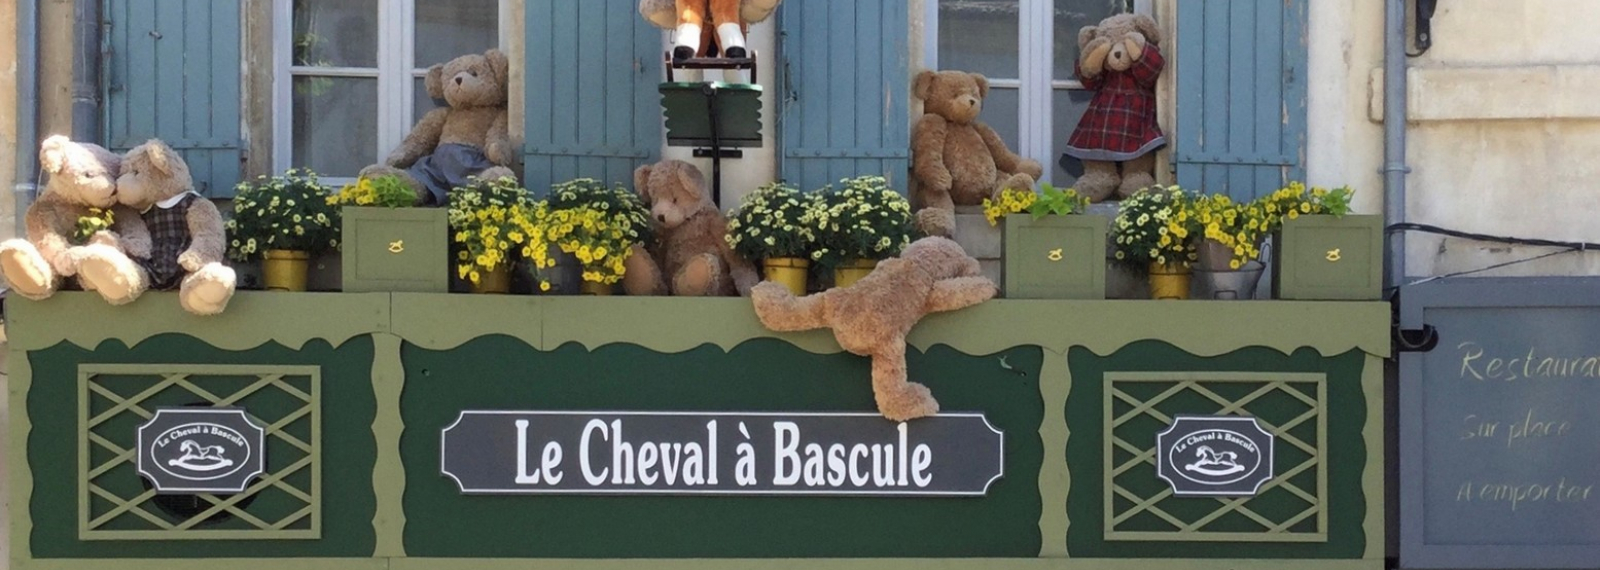 Le Cheval à bascule Saint-Rémy-de-Provence